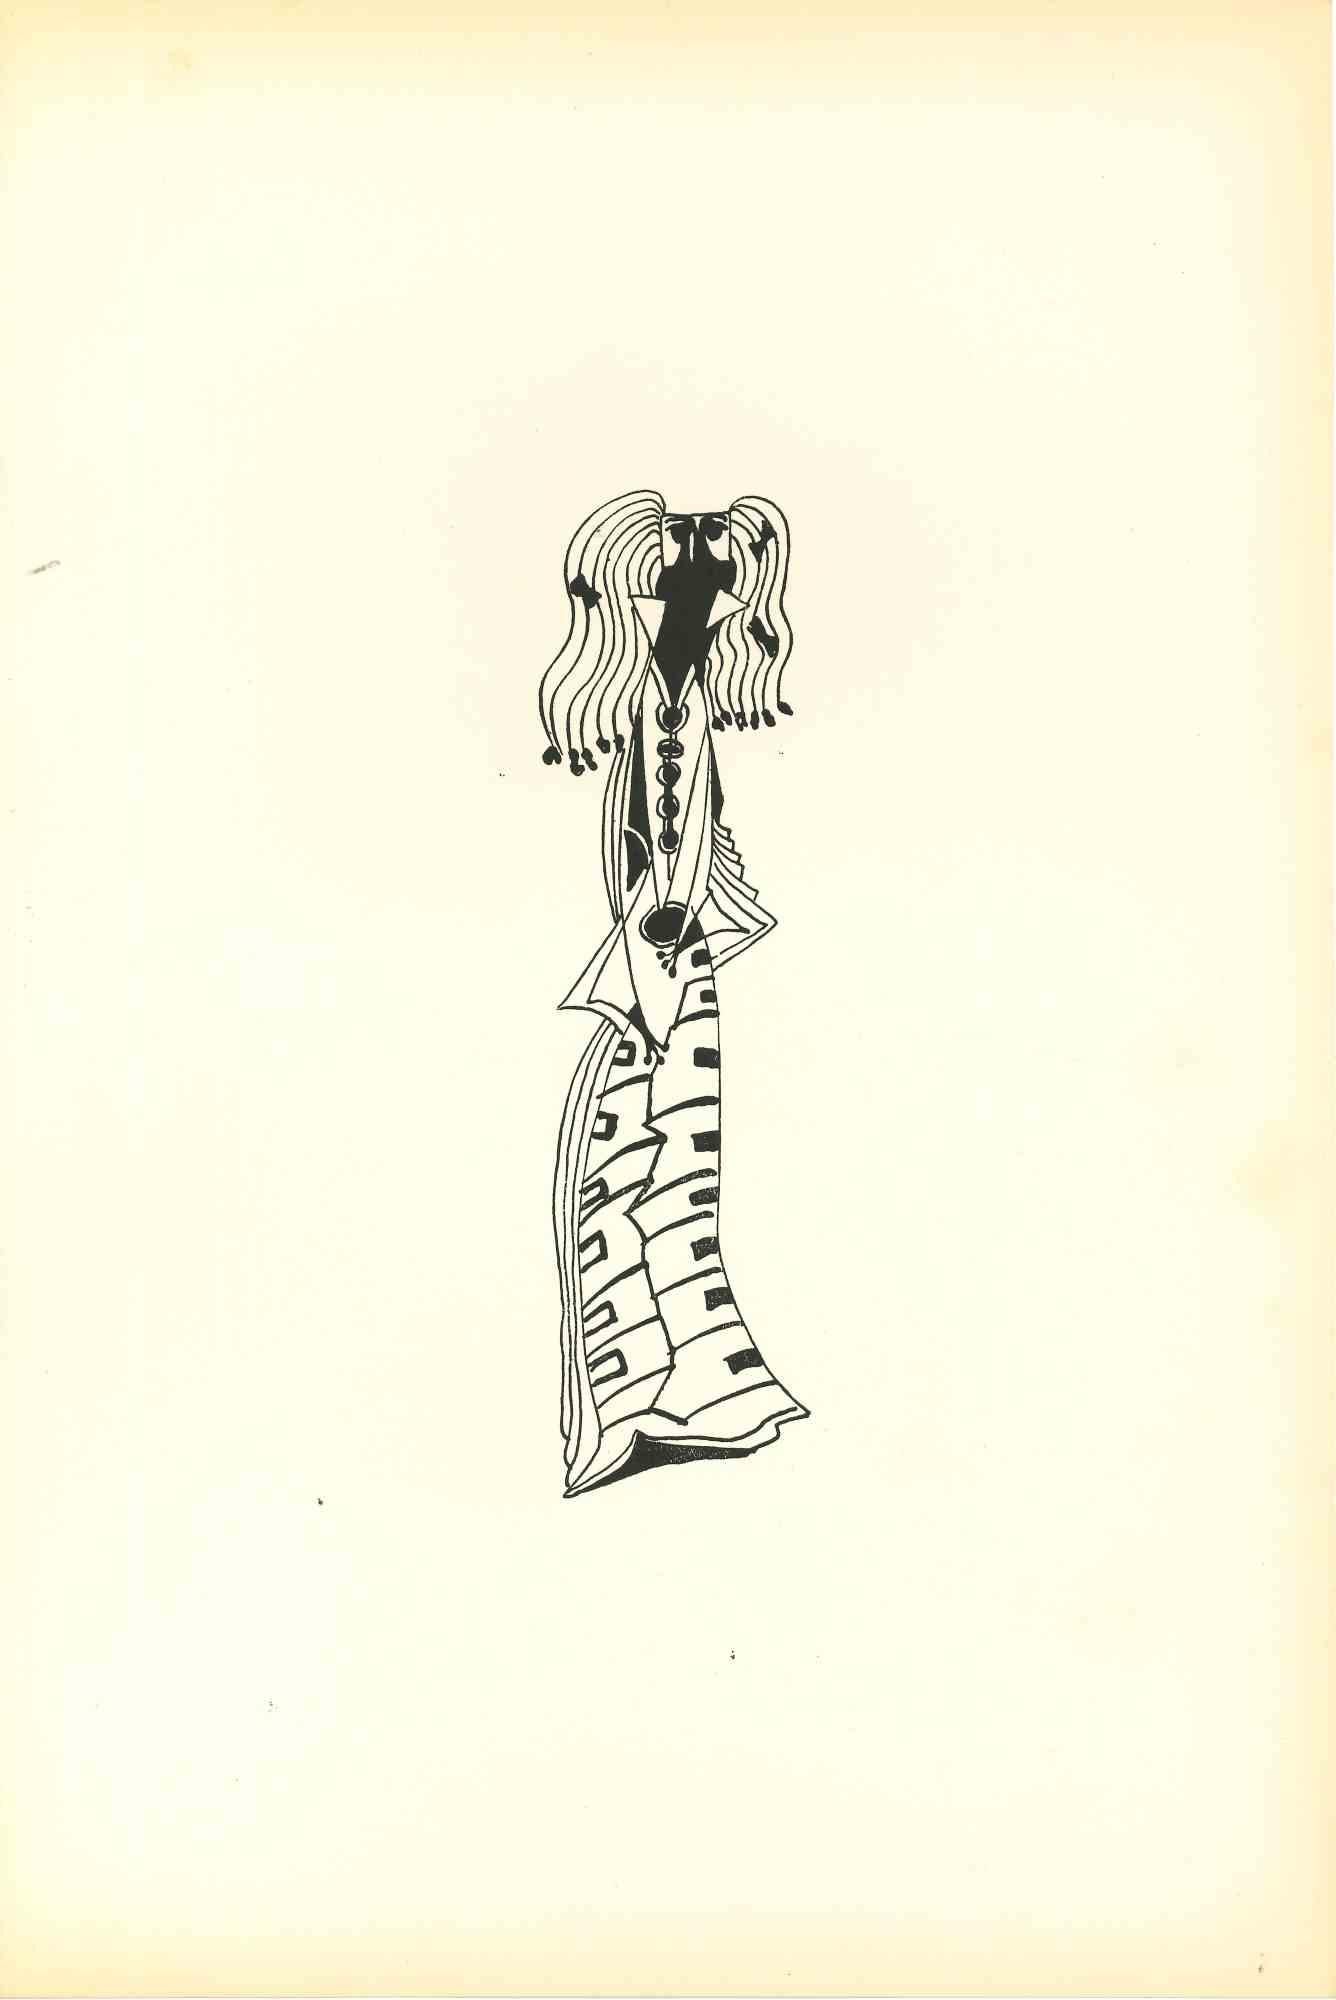 Composition Of Diodora est une lithographie originale réalisée par Bruno Capacci en 1950.

L'œuvre fait partie d'une édition en 500 exemplaires de "La nef d'argent" Paris.

En bon état, sans signature.

Bruno Capacci (1906-1996) est un artiste né en